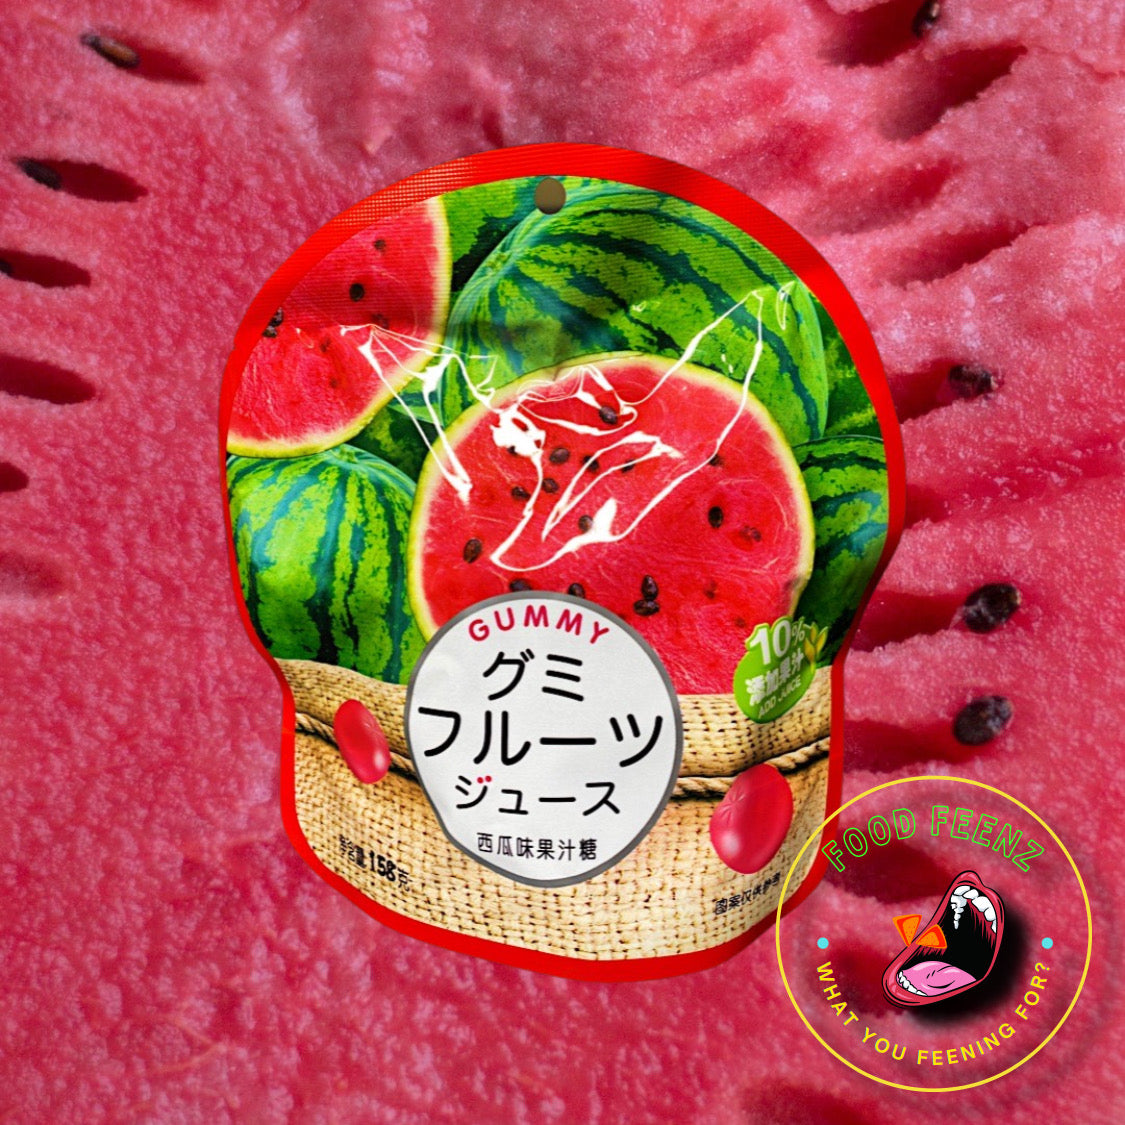 Watermelon Juice Candy (China)